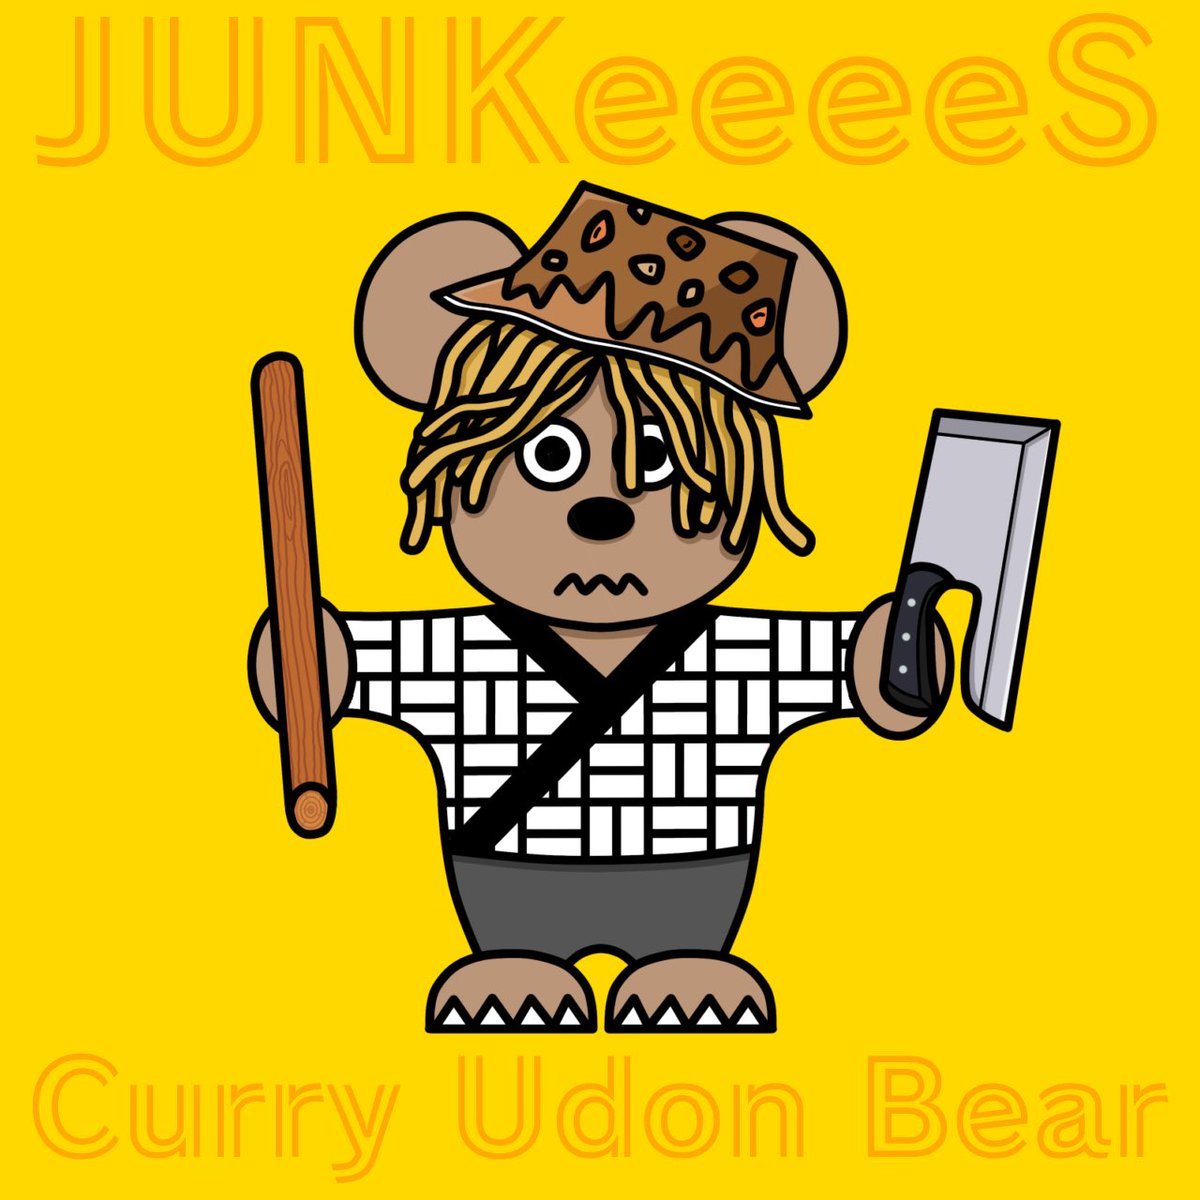 セルフィーさんによる #JUNKeeeeS カレー選手権応募作品giveawayはこちら！！
Curry Udon Bearのなんとも言えない表情が堪りません🤤

自分に当たって欲しい気持ちと拡散したい気持ちがせめぎ合っていますが、やはりココは拡散！！ 